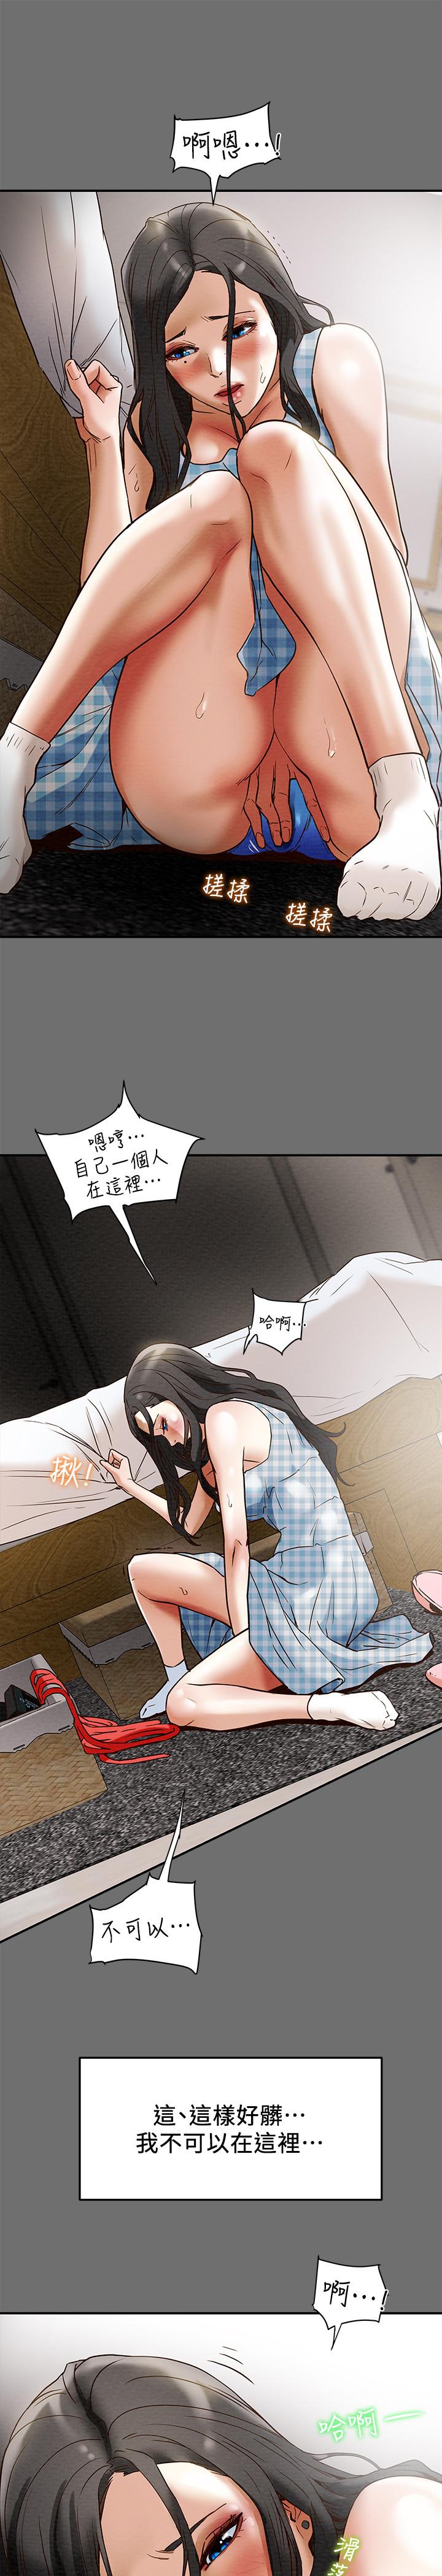 韩国污漫画 純情女攻略計劃 第2话-不能被发现的淫荡面貌 25